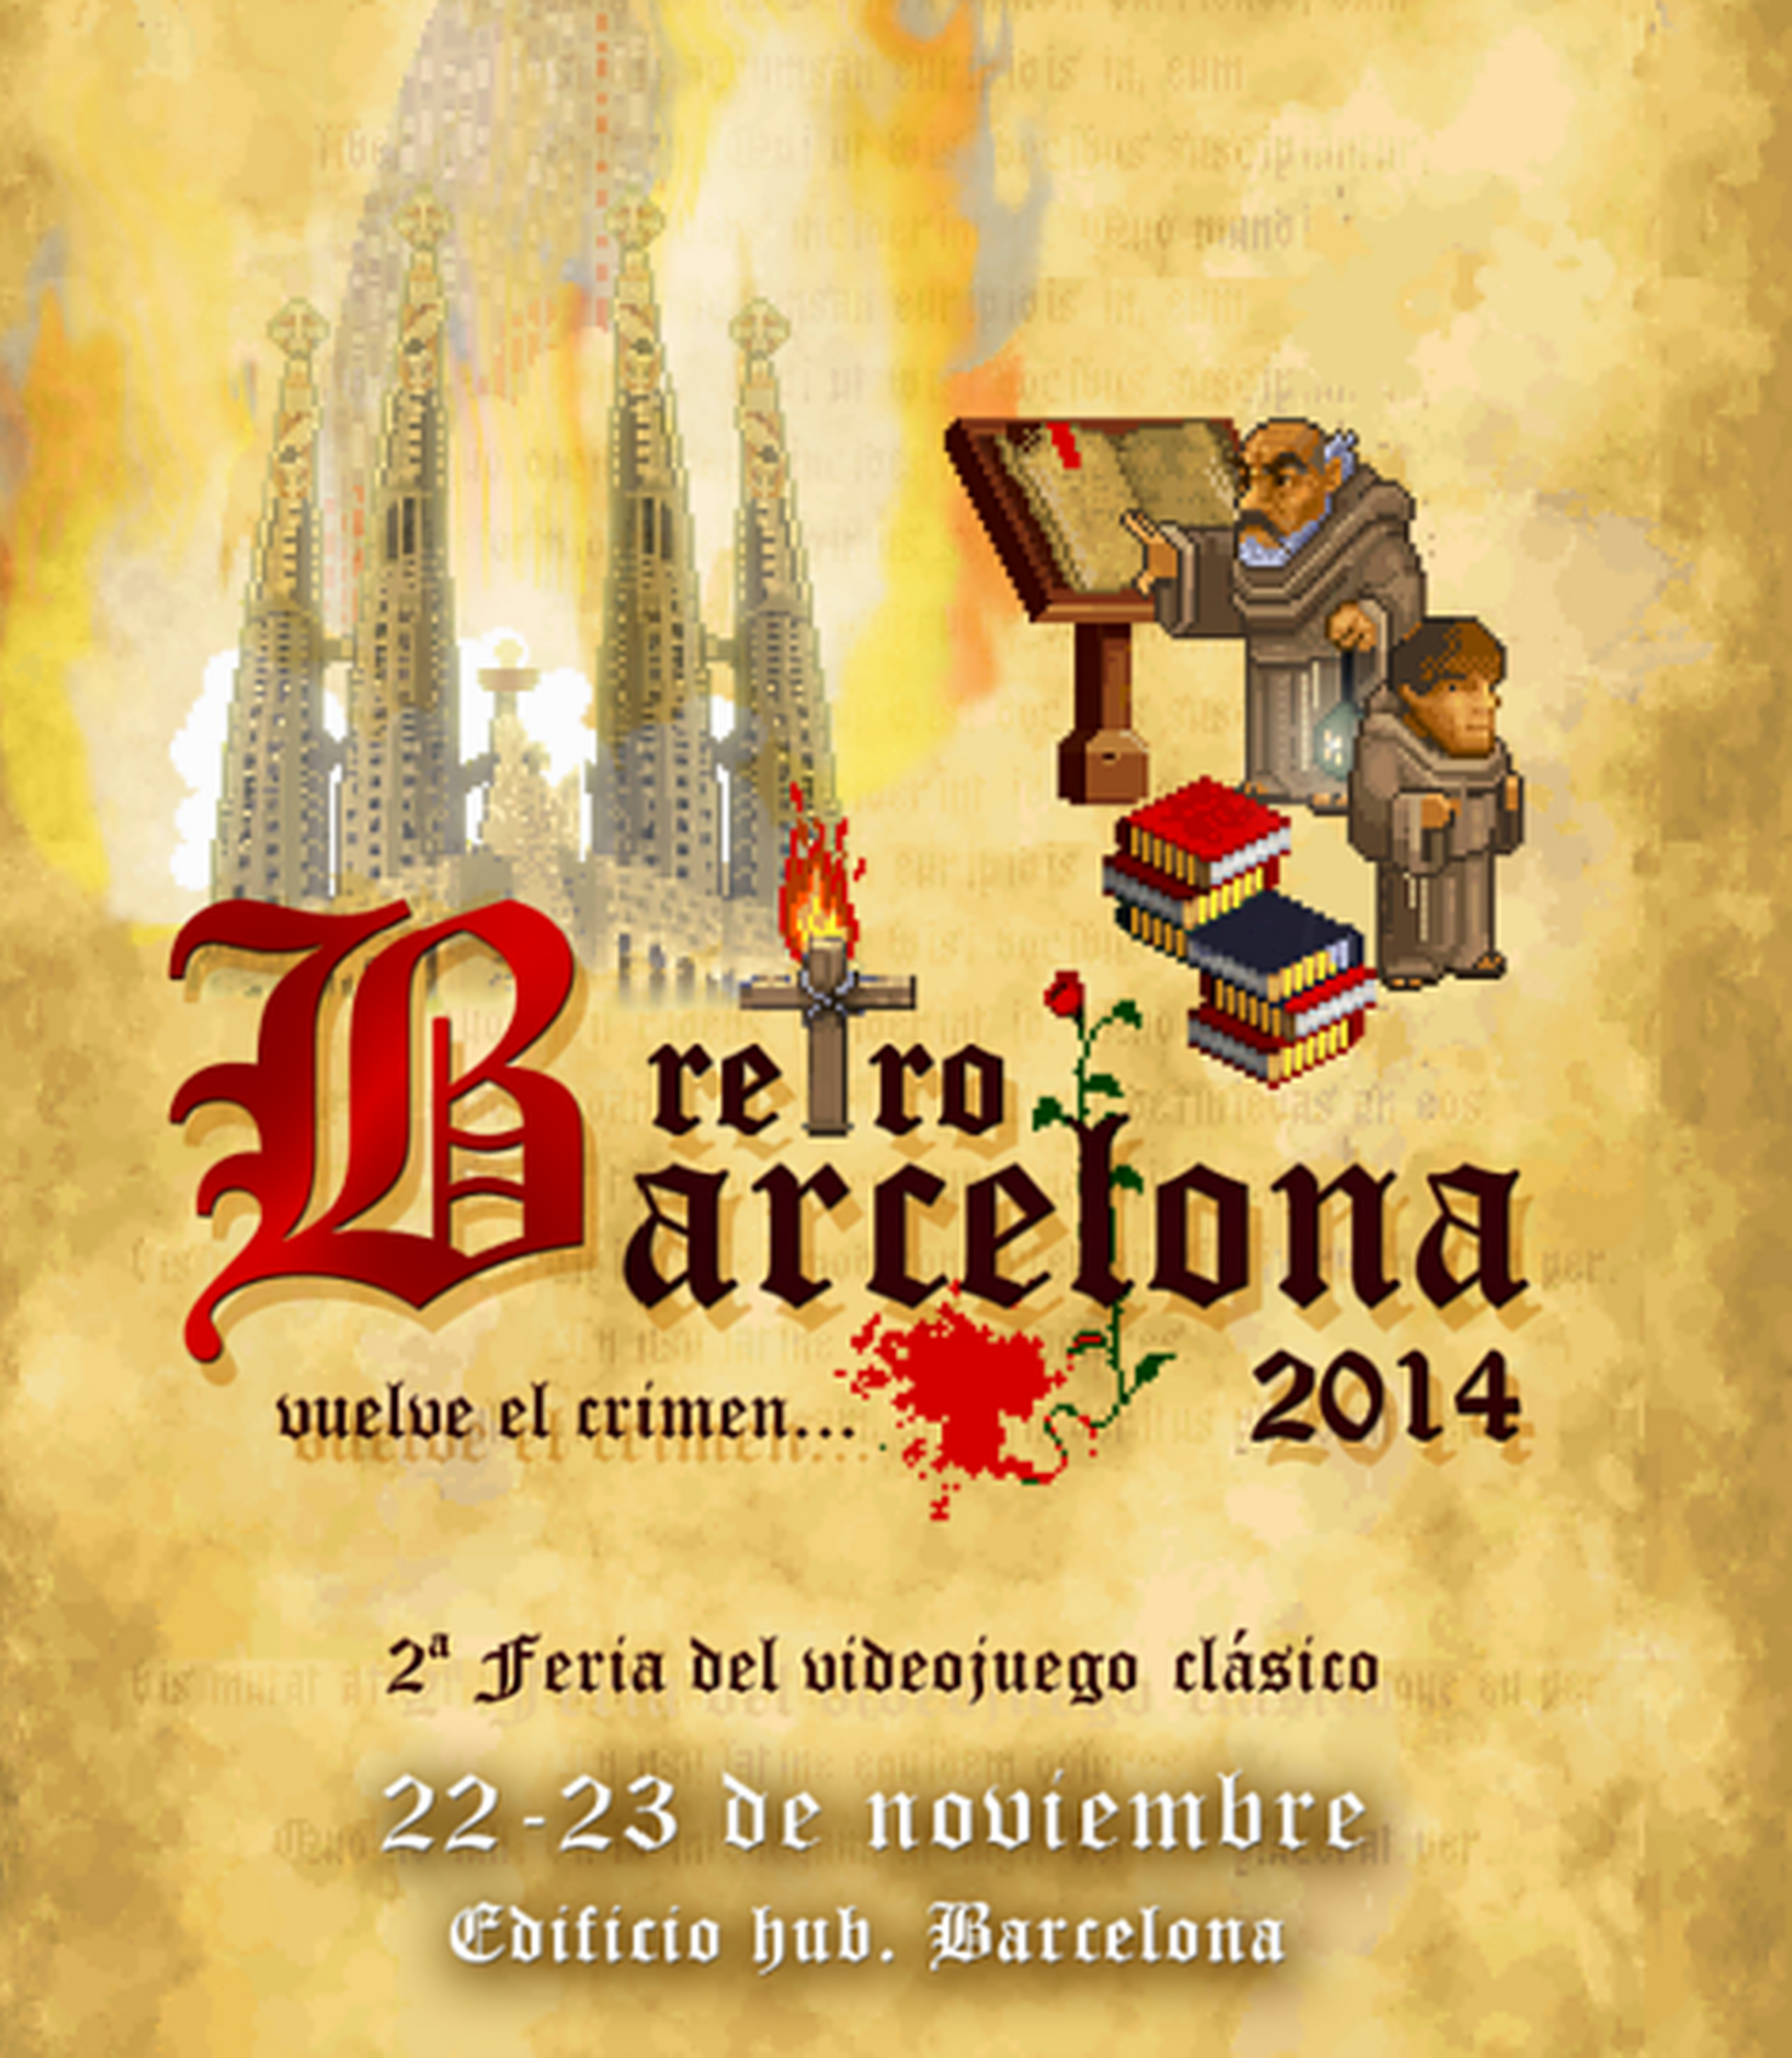 Retrobarcelona 2014 abre sus puertas el 22 y 23 de noviembre